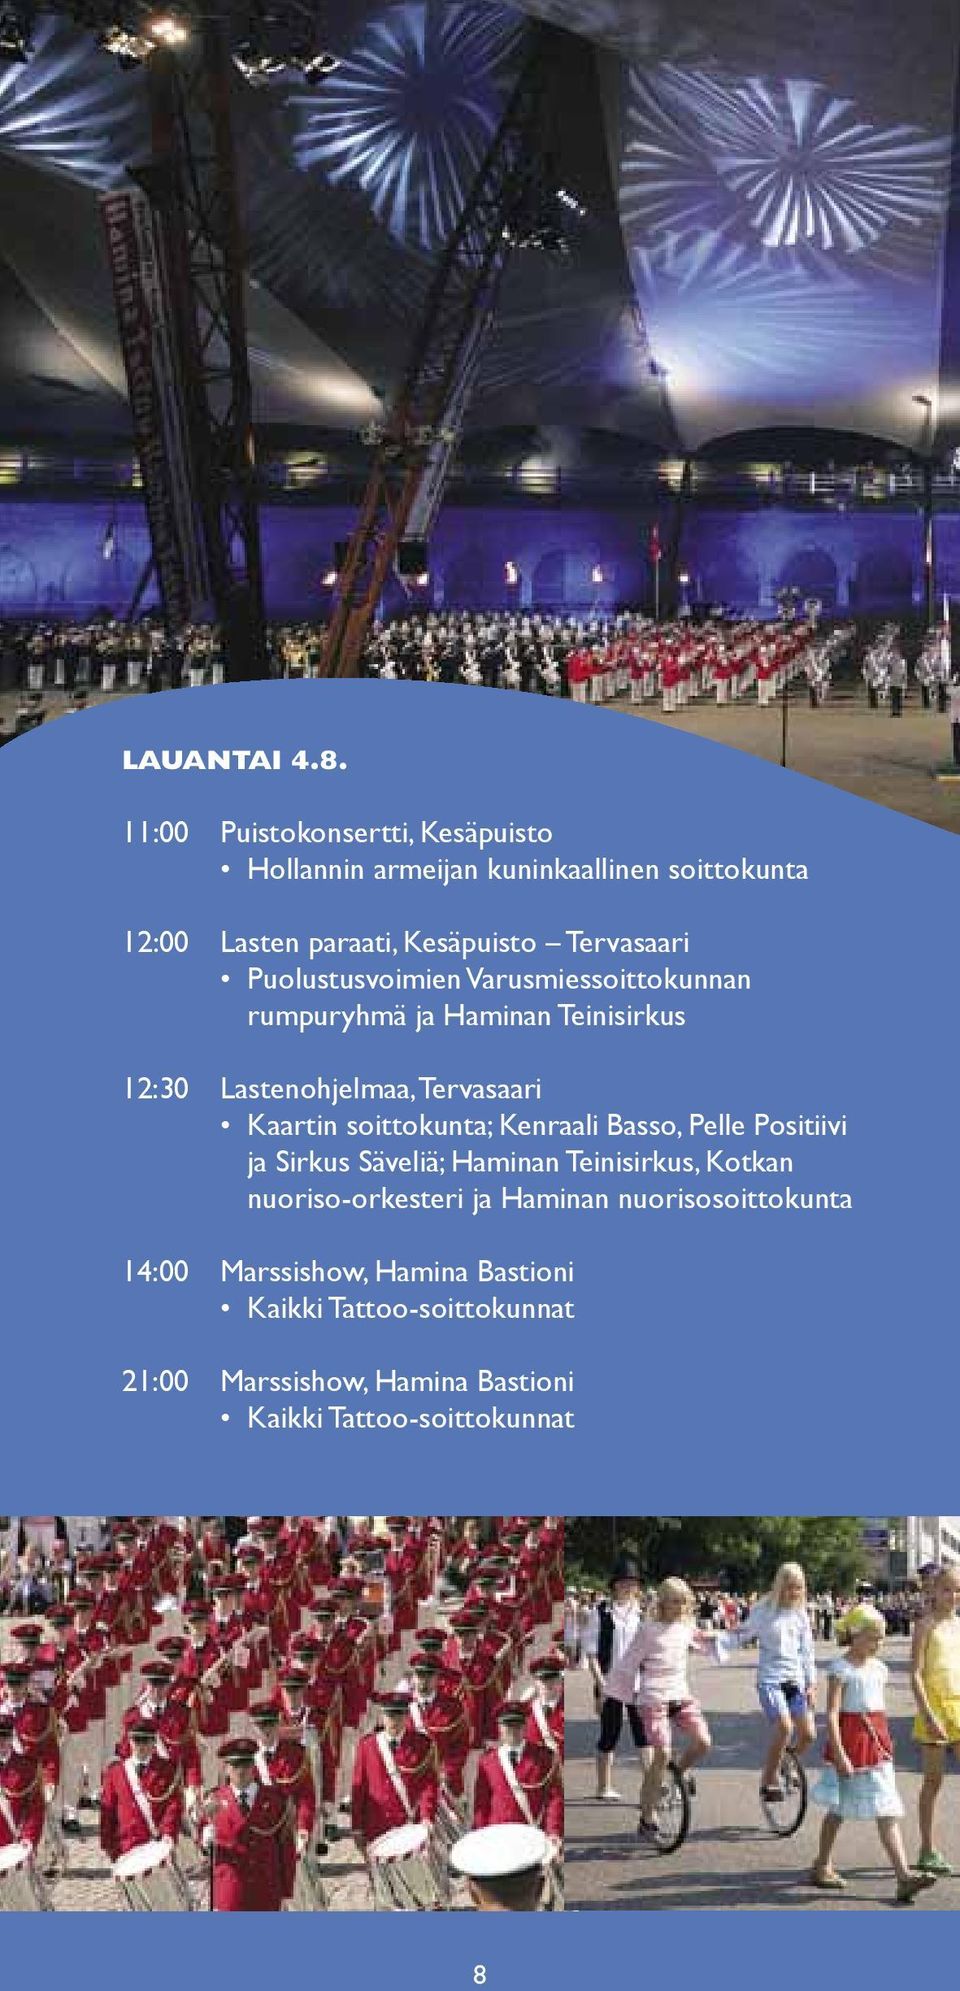 Puolustusvoimien Varusmiessoittokunnan rumpuryhmä ja Haminan Teinisirkus 12:30 Lastenohjelmaa, Tervasaari Kaartin soittokunta;